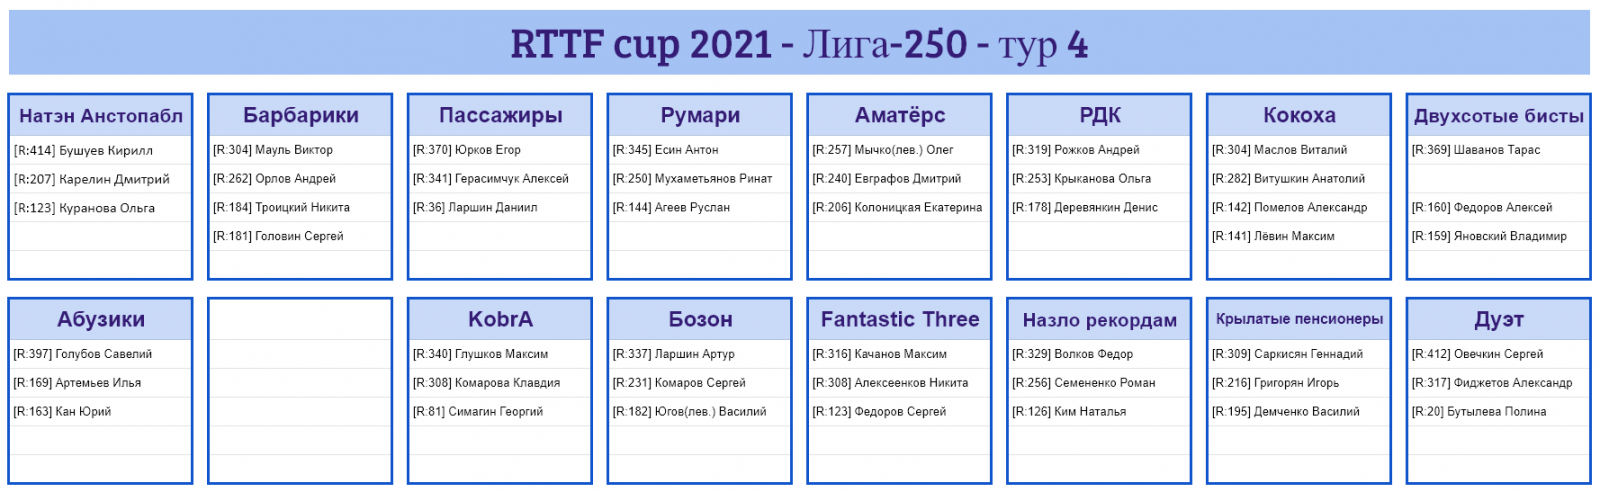 результаты турнира Лига - 250! 4-й тур Кубка RTTF 2021